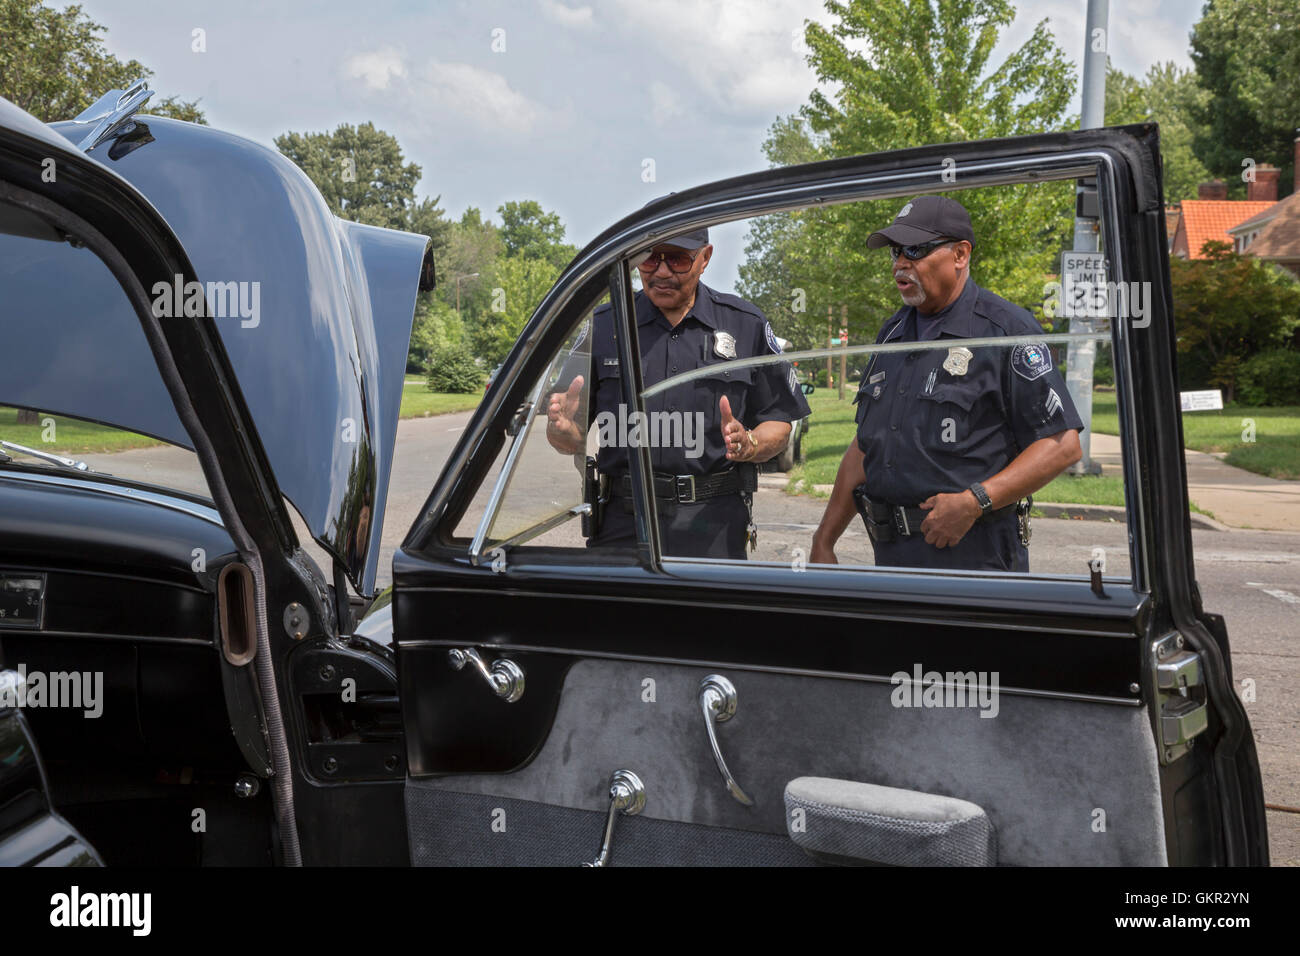 Detroit, Michigan - Nachbarschaft Gruppen halten ein Sommer Street fair. Reserve-Polizisten untersuchen einen 1949 Cadillac auf dem Display. Stockfoto